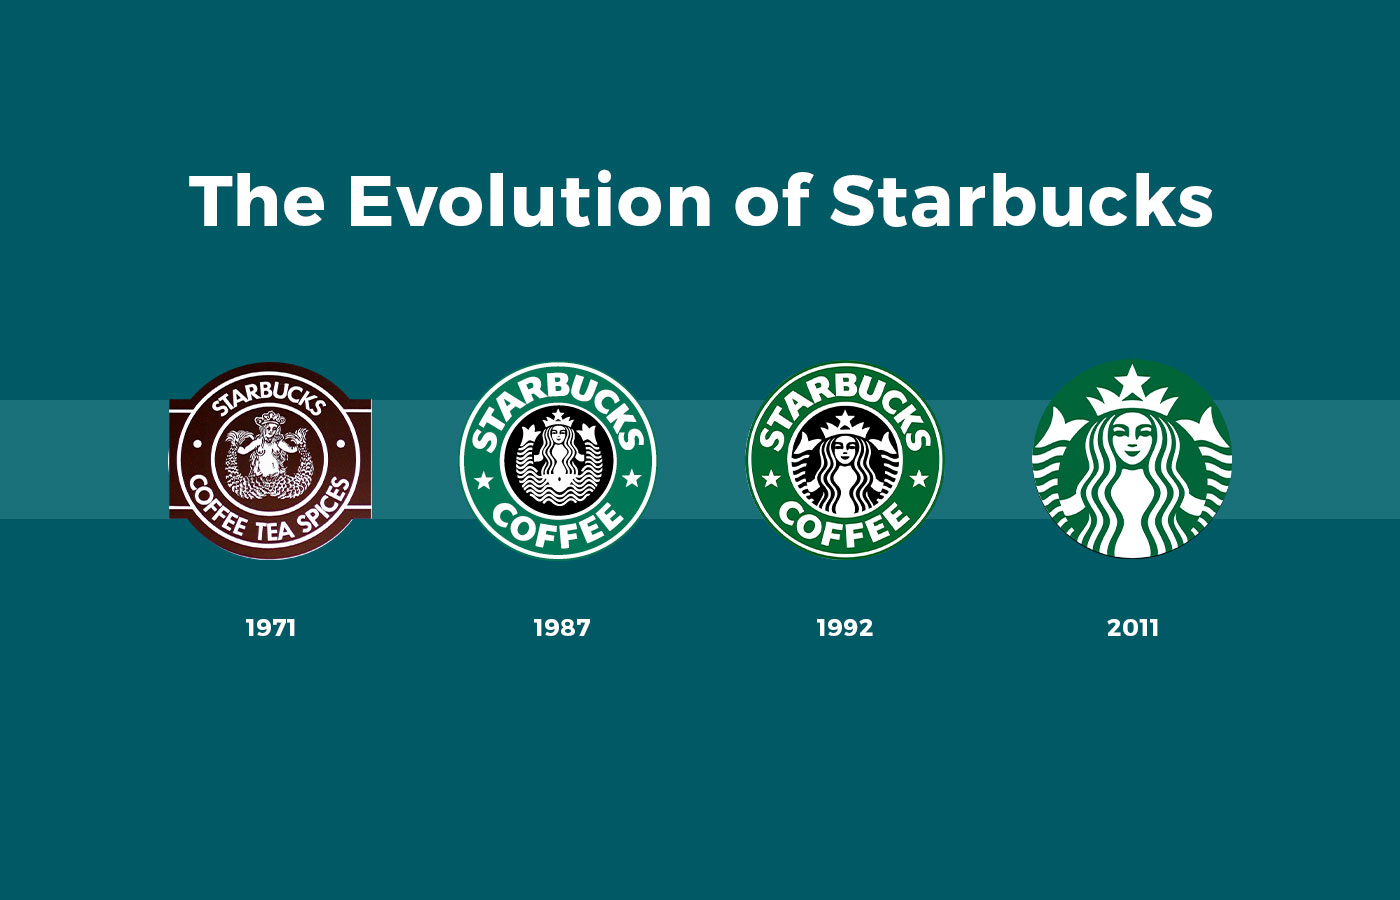 Starbucks rebranding